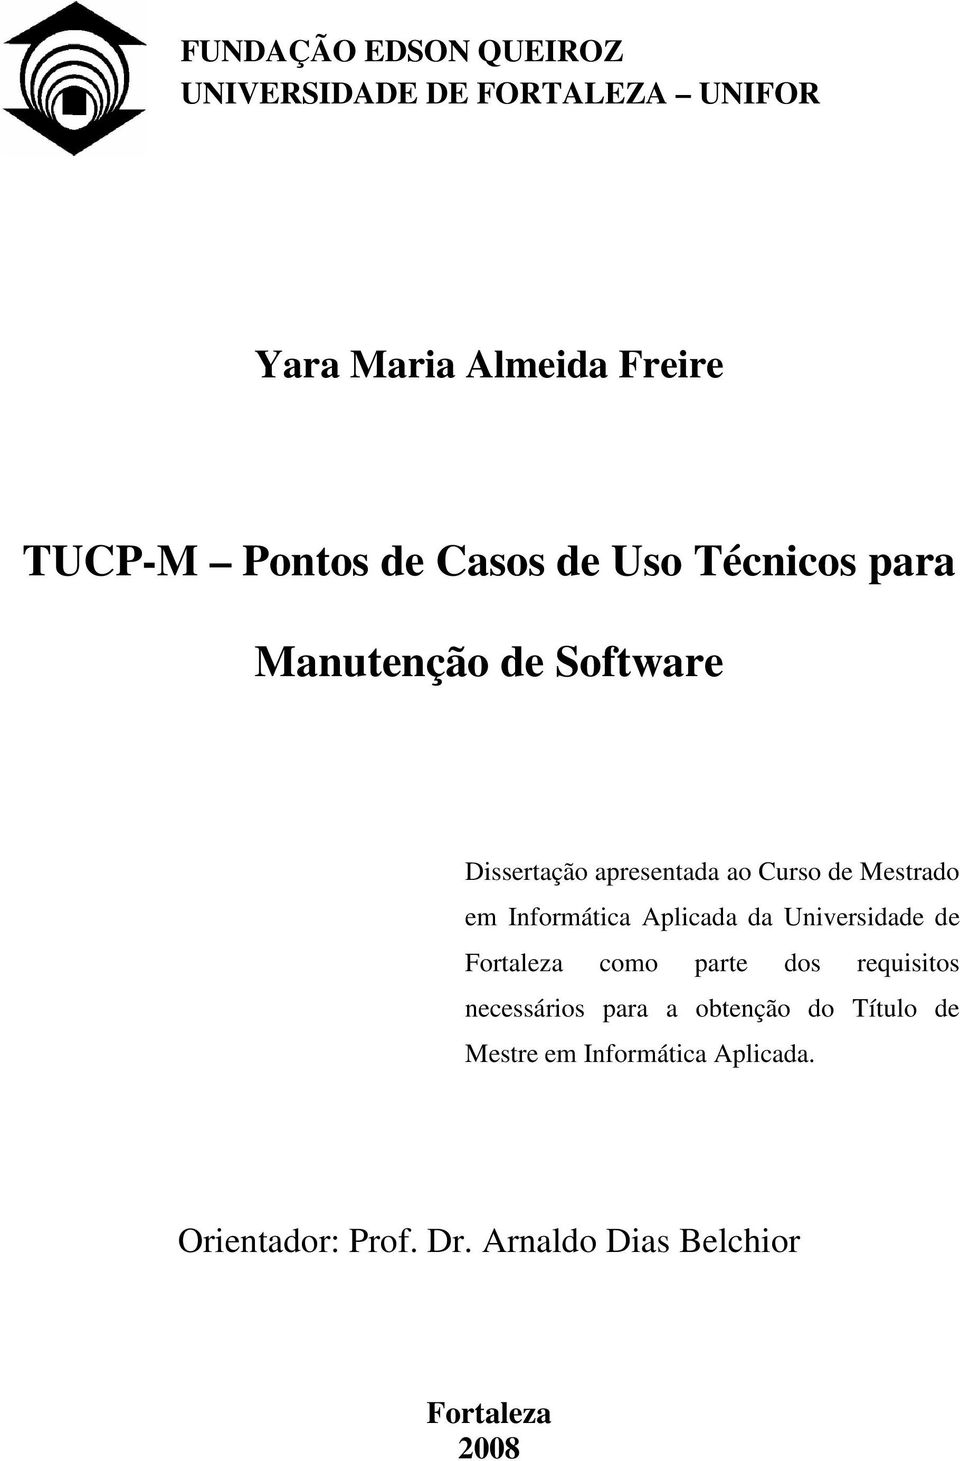 Informática Aplicada da Universidade de Fortaleza como parte dos requisitos necessários para a